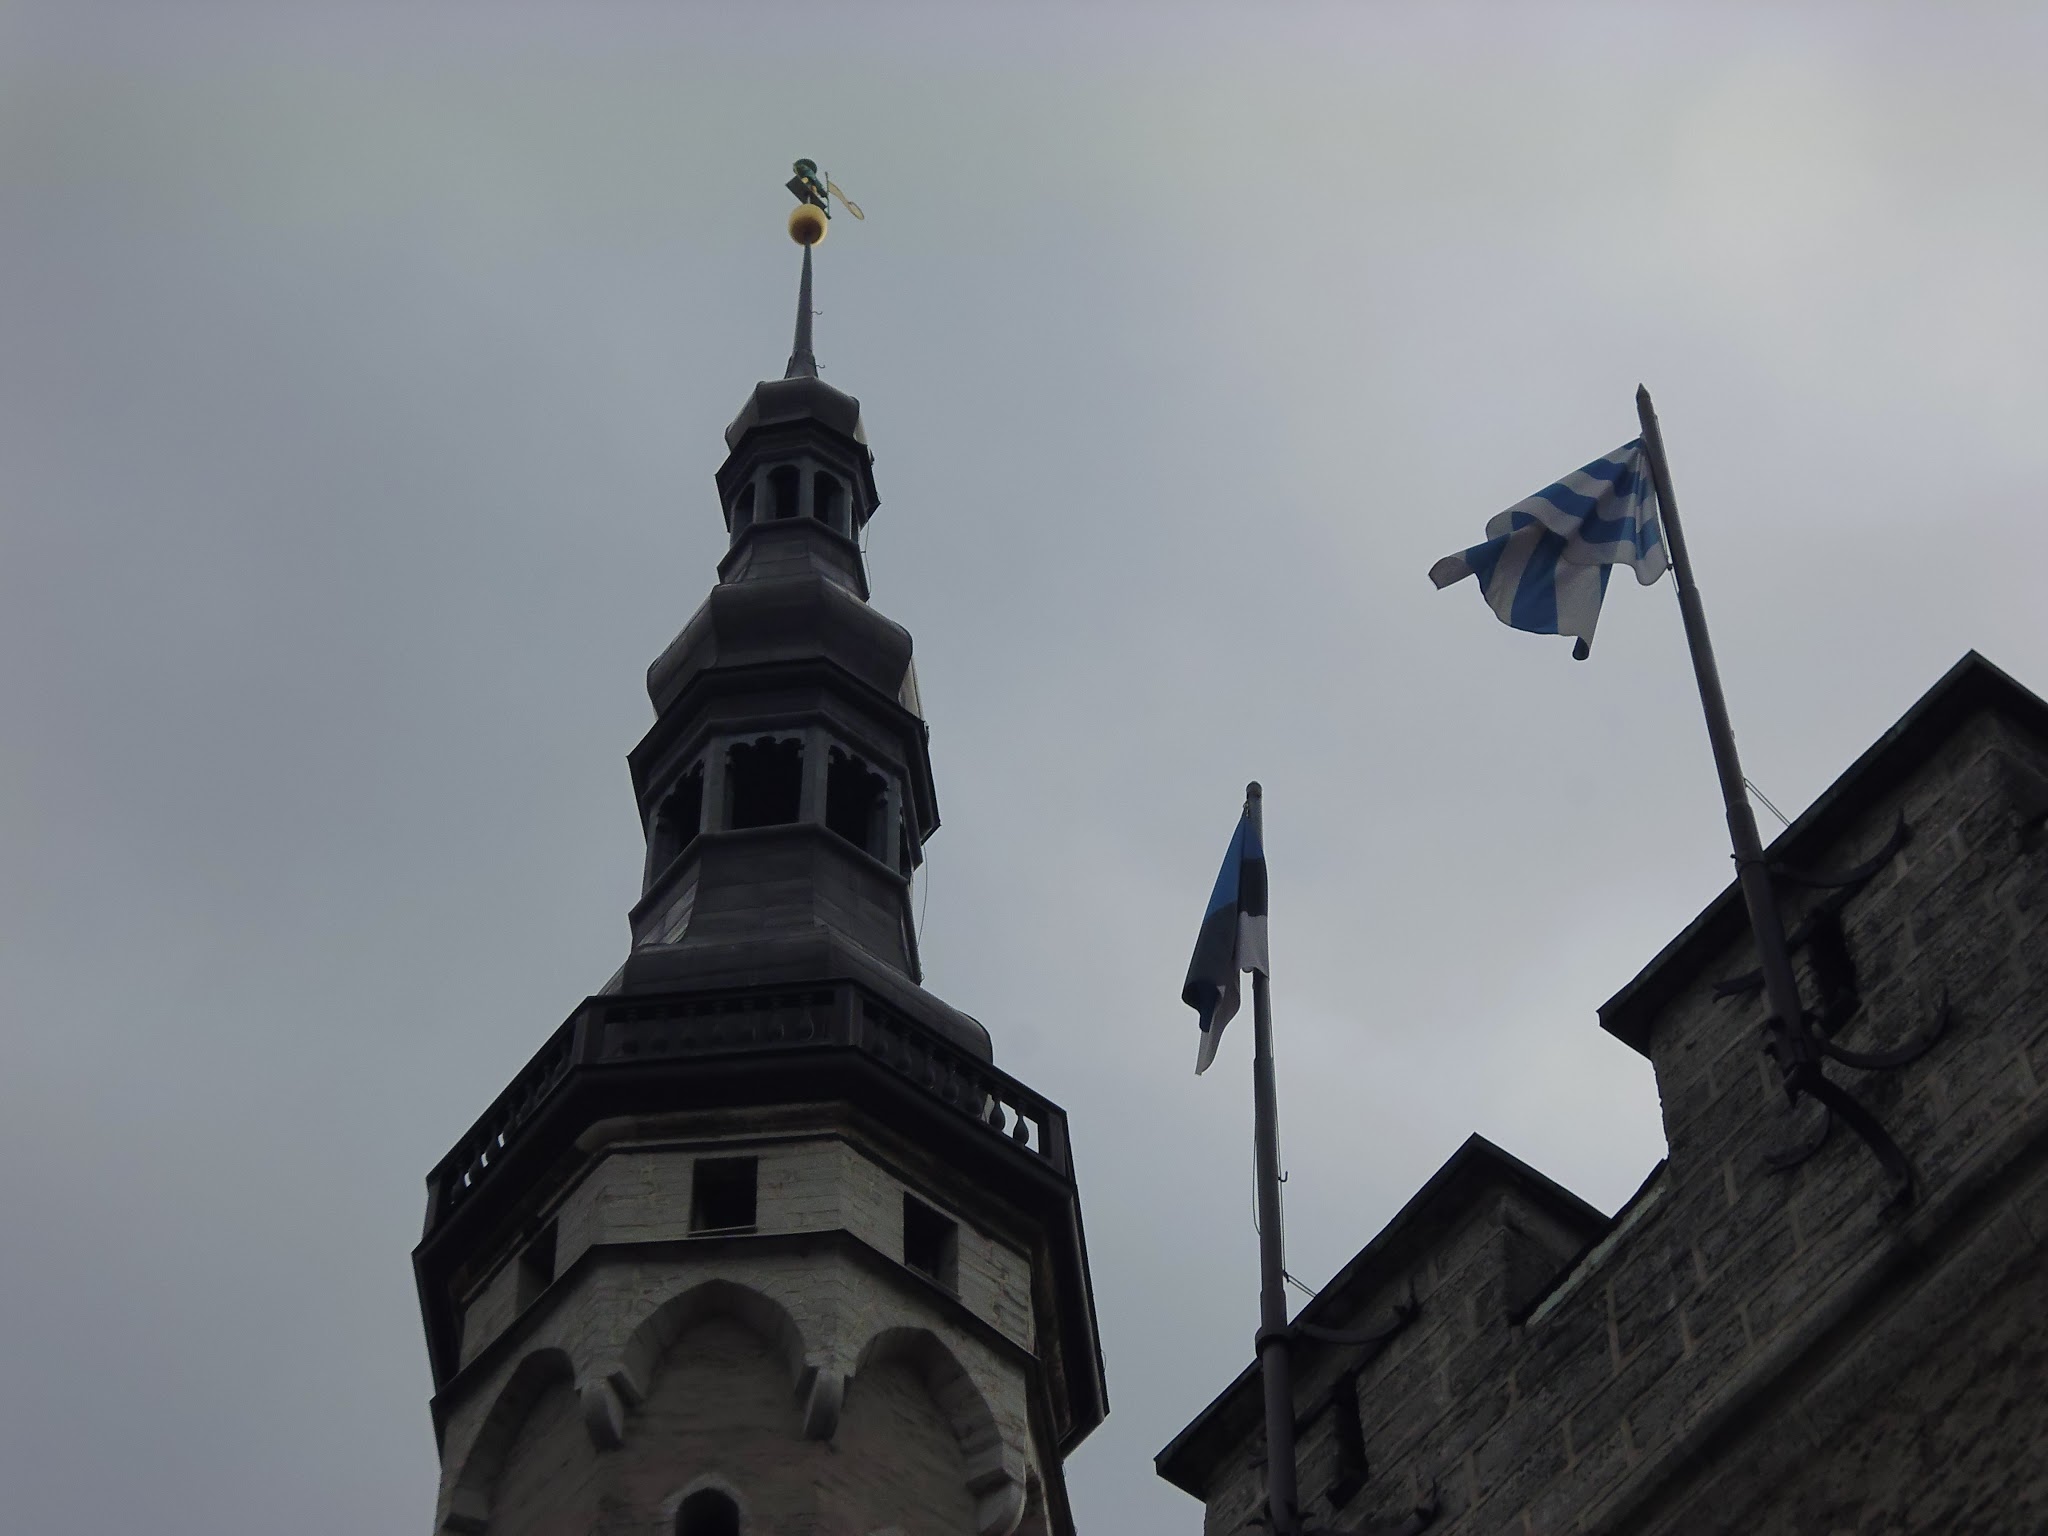 Vana Toomas, la veleta que corona la torre del Ayuntamiento de Tallinn (Estonia) (@mibaulviajero)